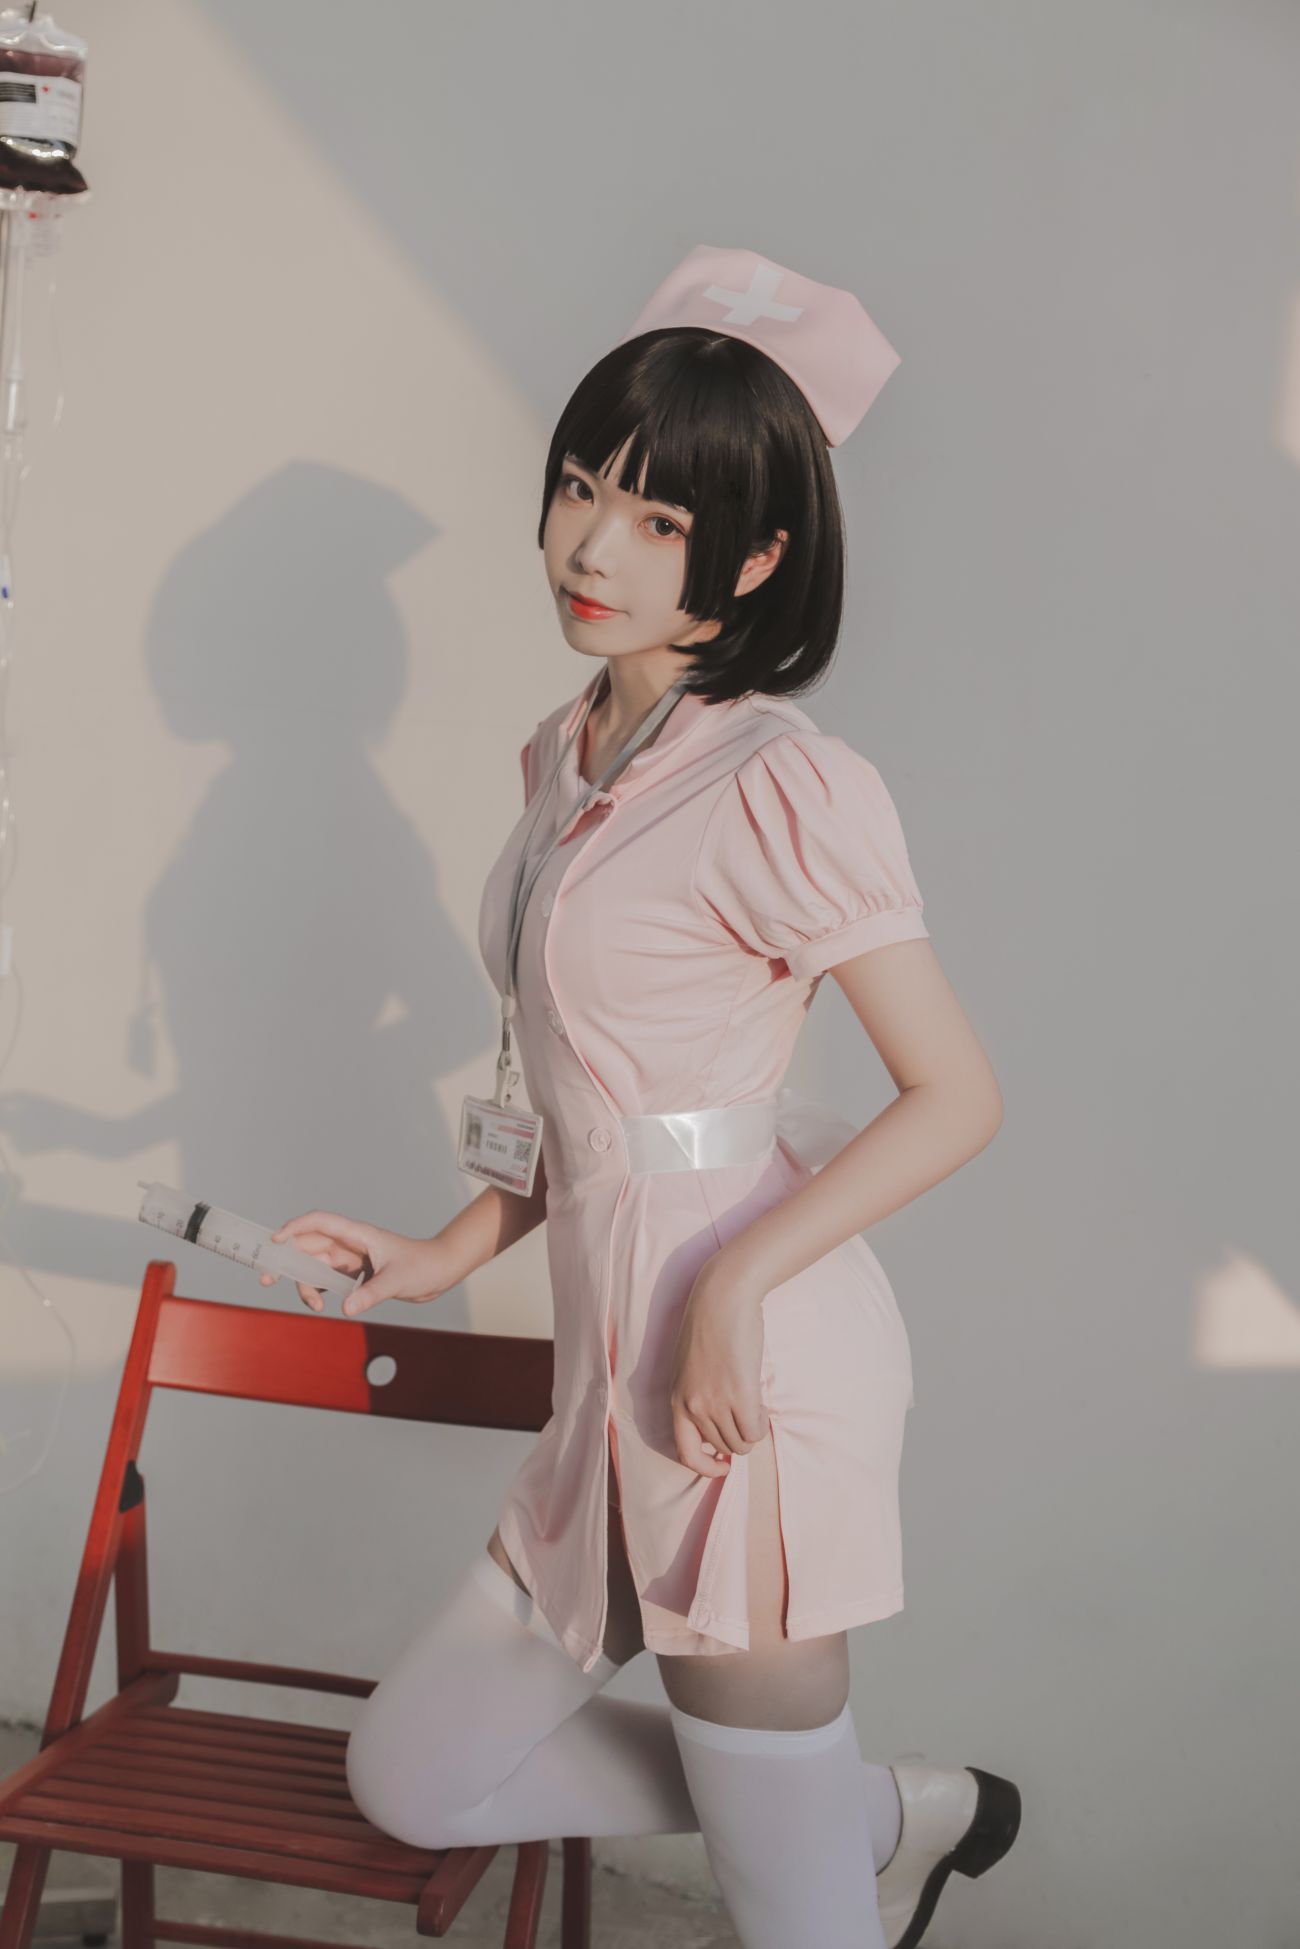 微博美少女Fushii海堂Cosplay性感写真护士 (17)